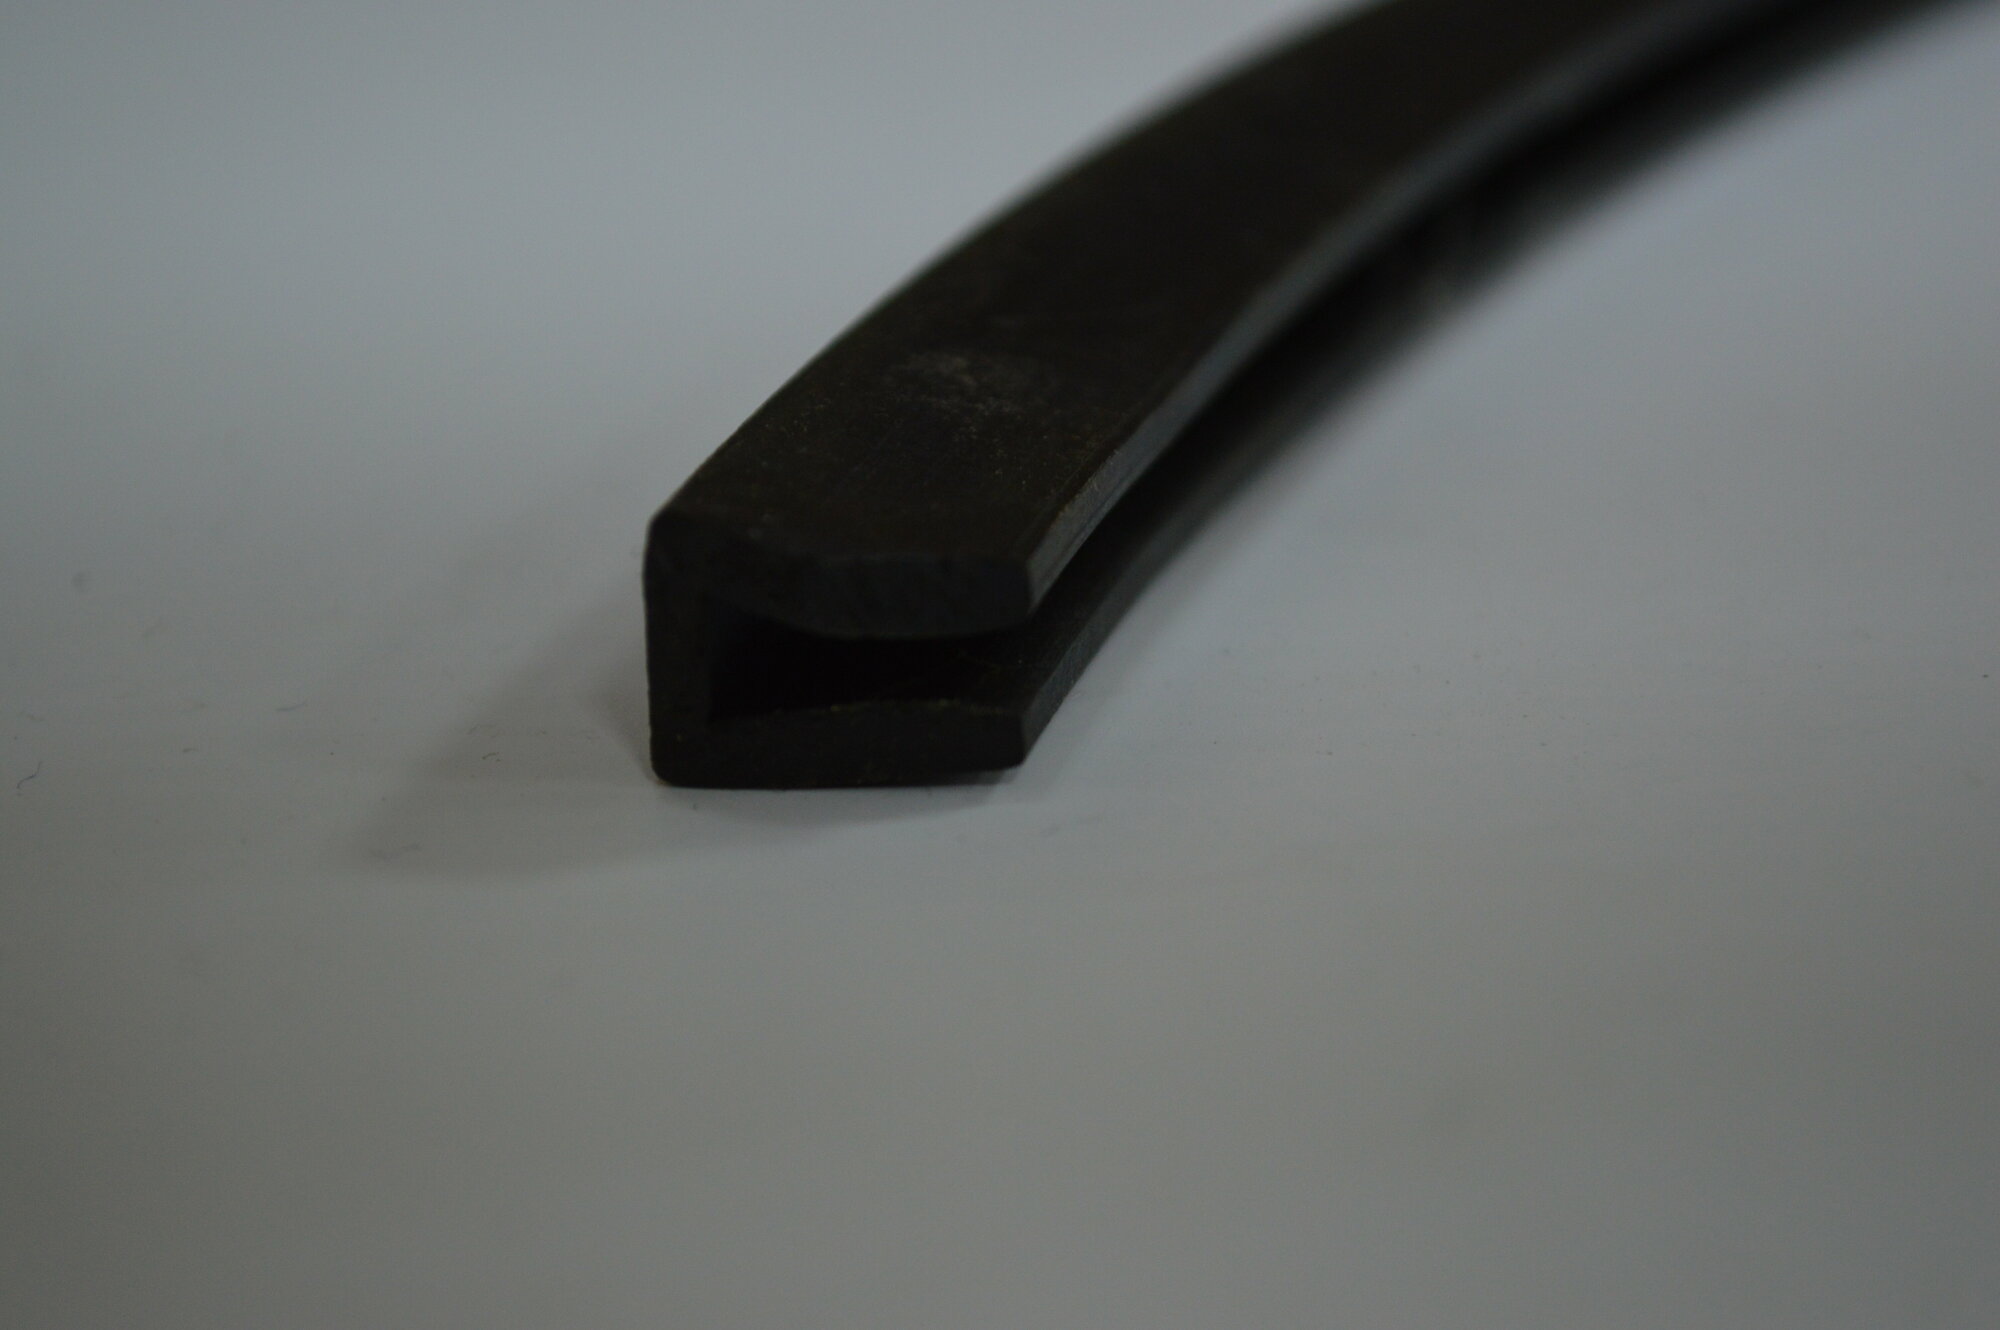 Профиль резиновый черный П-образный (10х12х8х2 мм) для уплотнения стекол и метала. Толщина стекла 8 мм. Длина 3 метра.